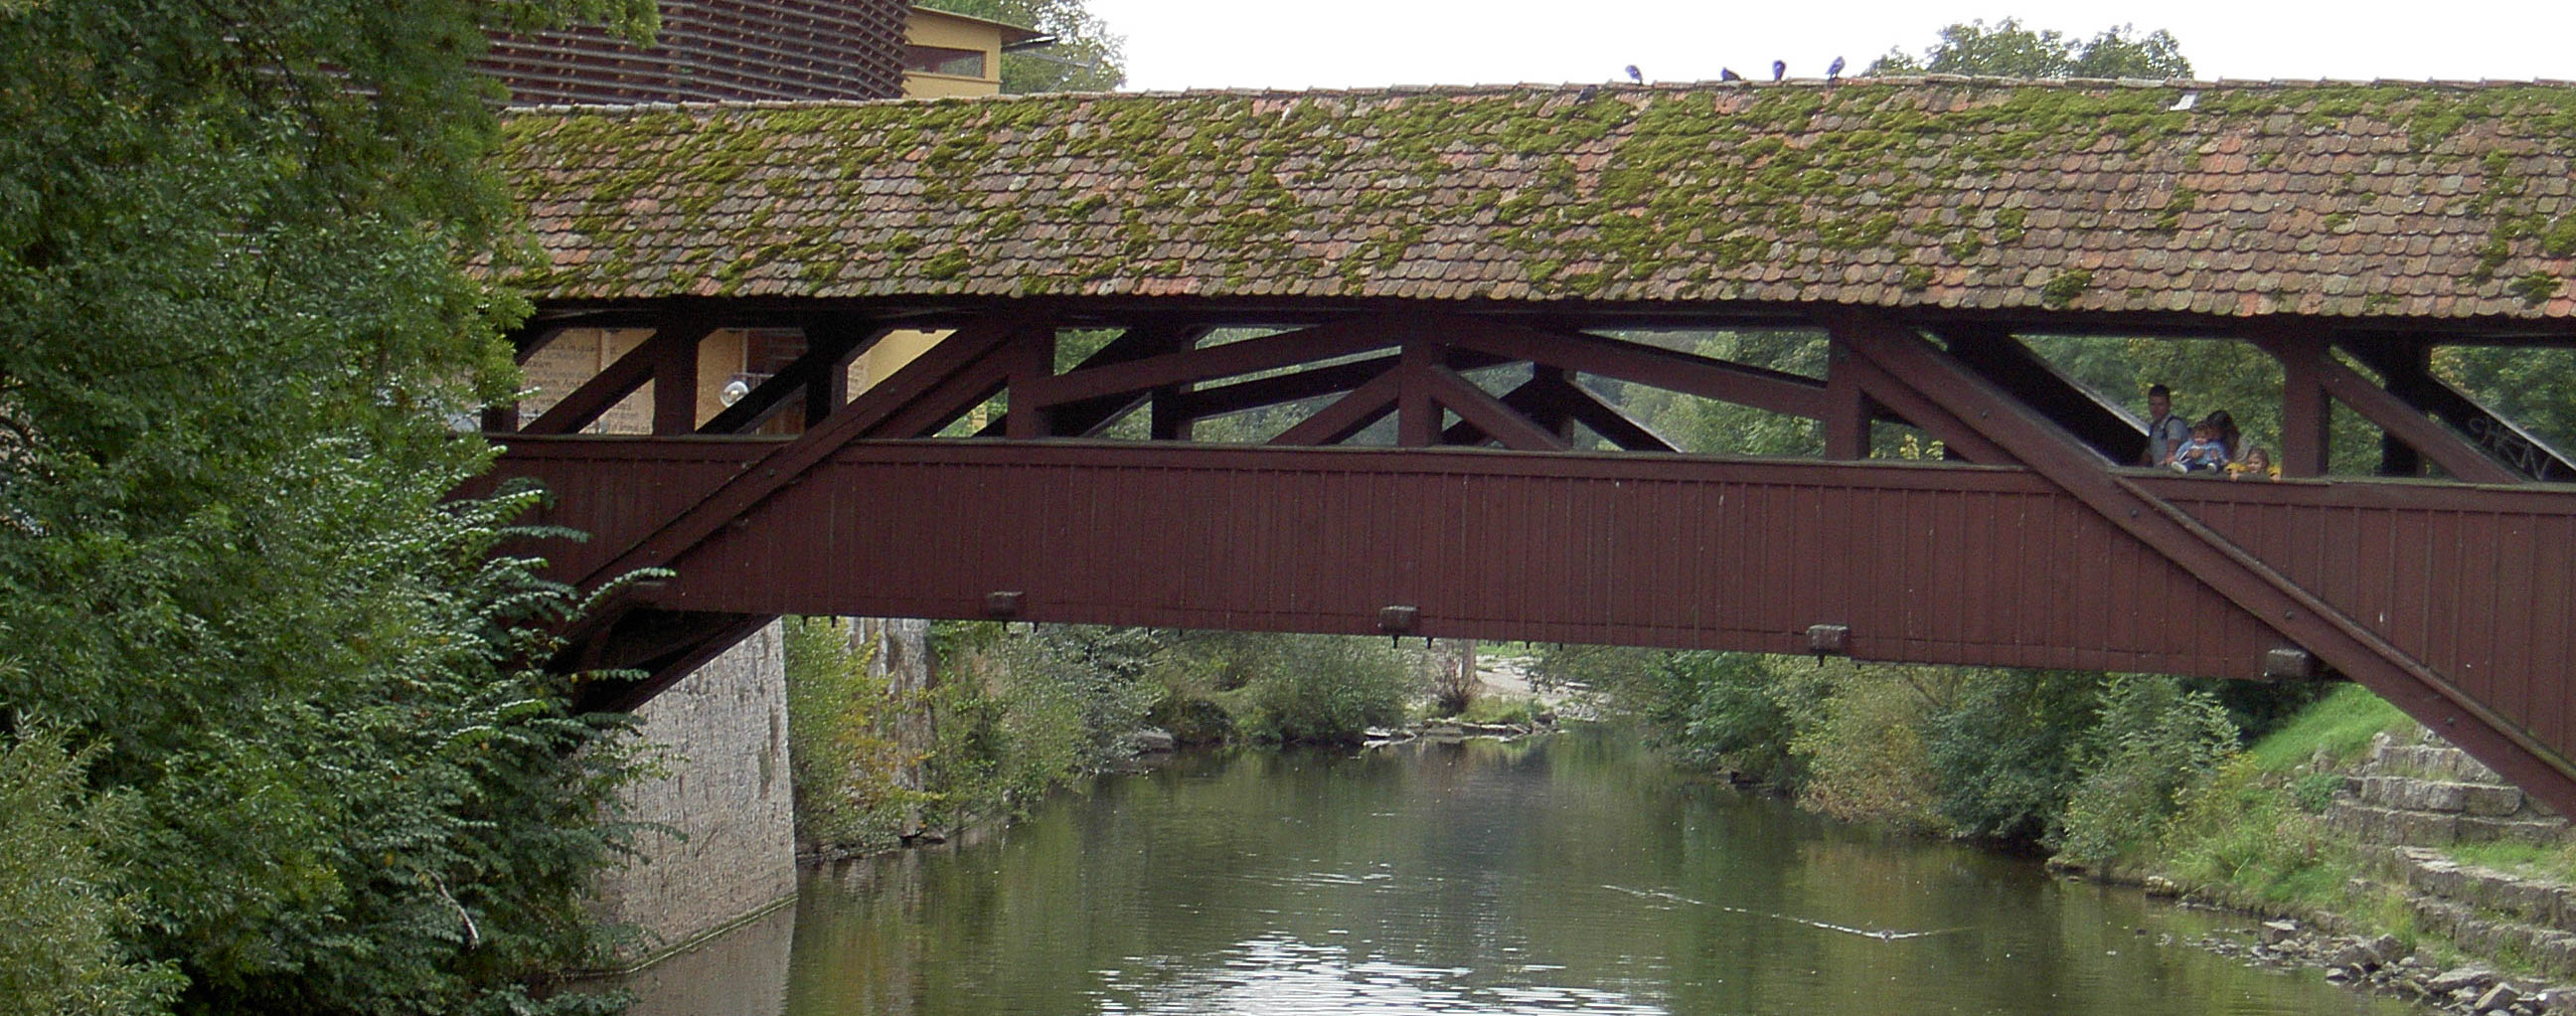 überdachte Brücke über einen Fluss